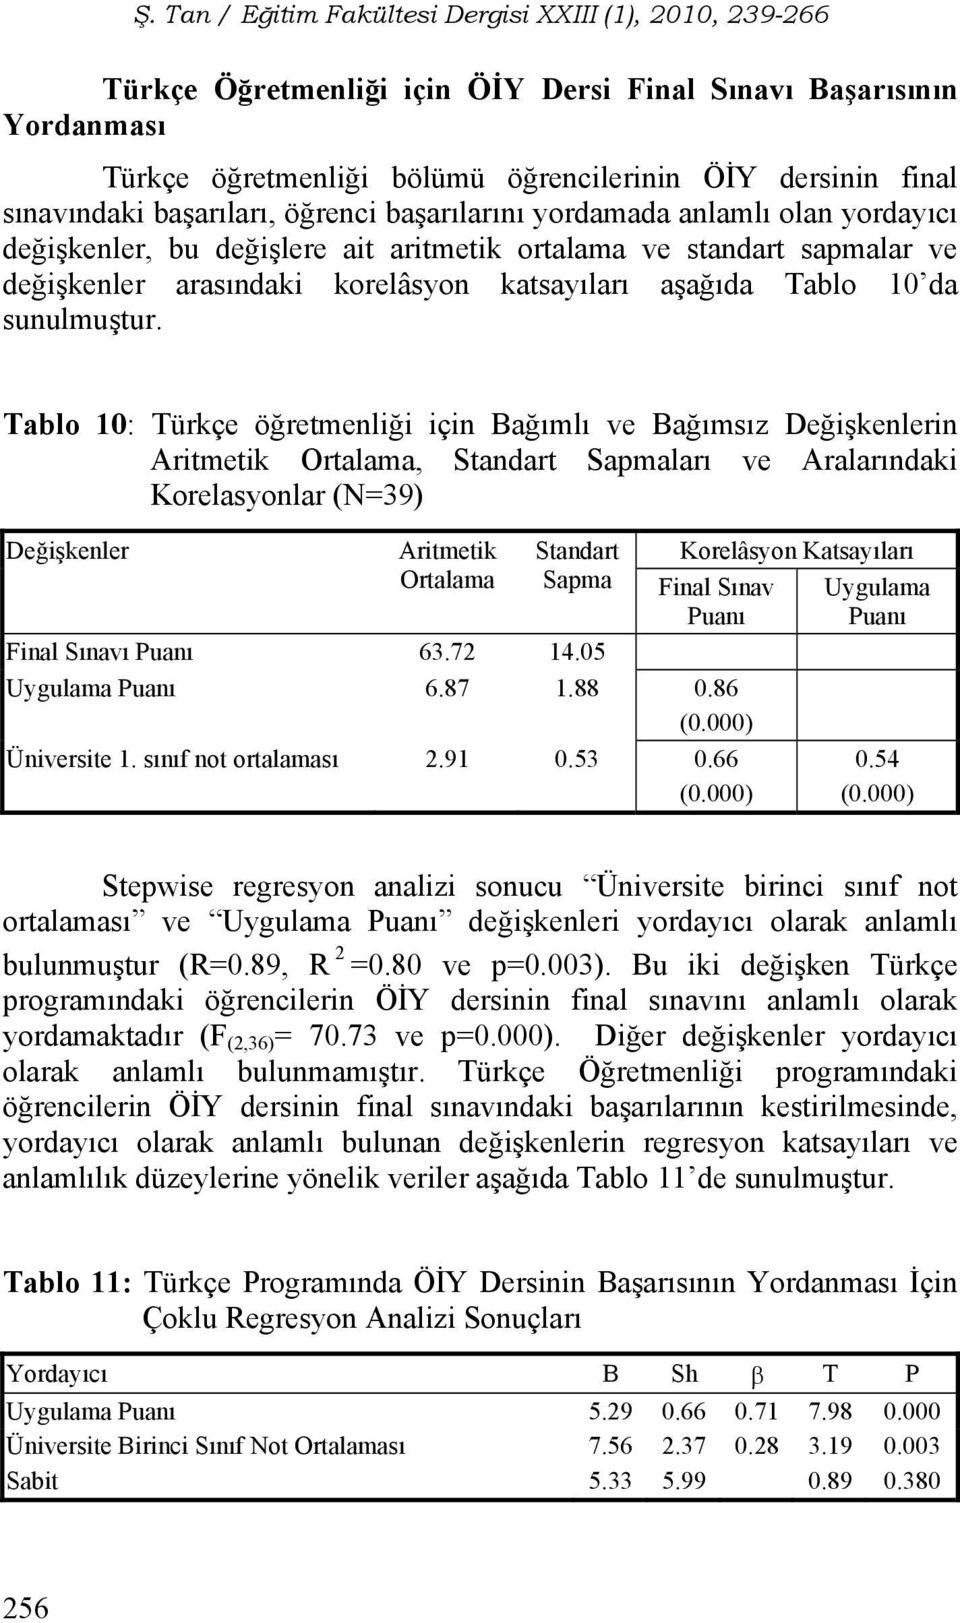 Tablo 10: Türkçe öğretmenliği için Bağımlı ve Bağımsız Değişkenlerin Aritmetik Ortalama, Standart Sapmaları ve Aralarındaki Korelasyonlar (N=39) Değişkenler Aritmetik Ortalama Standart Sapma